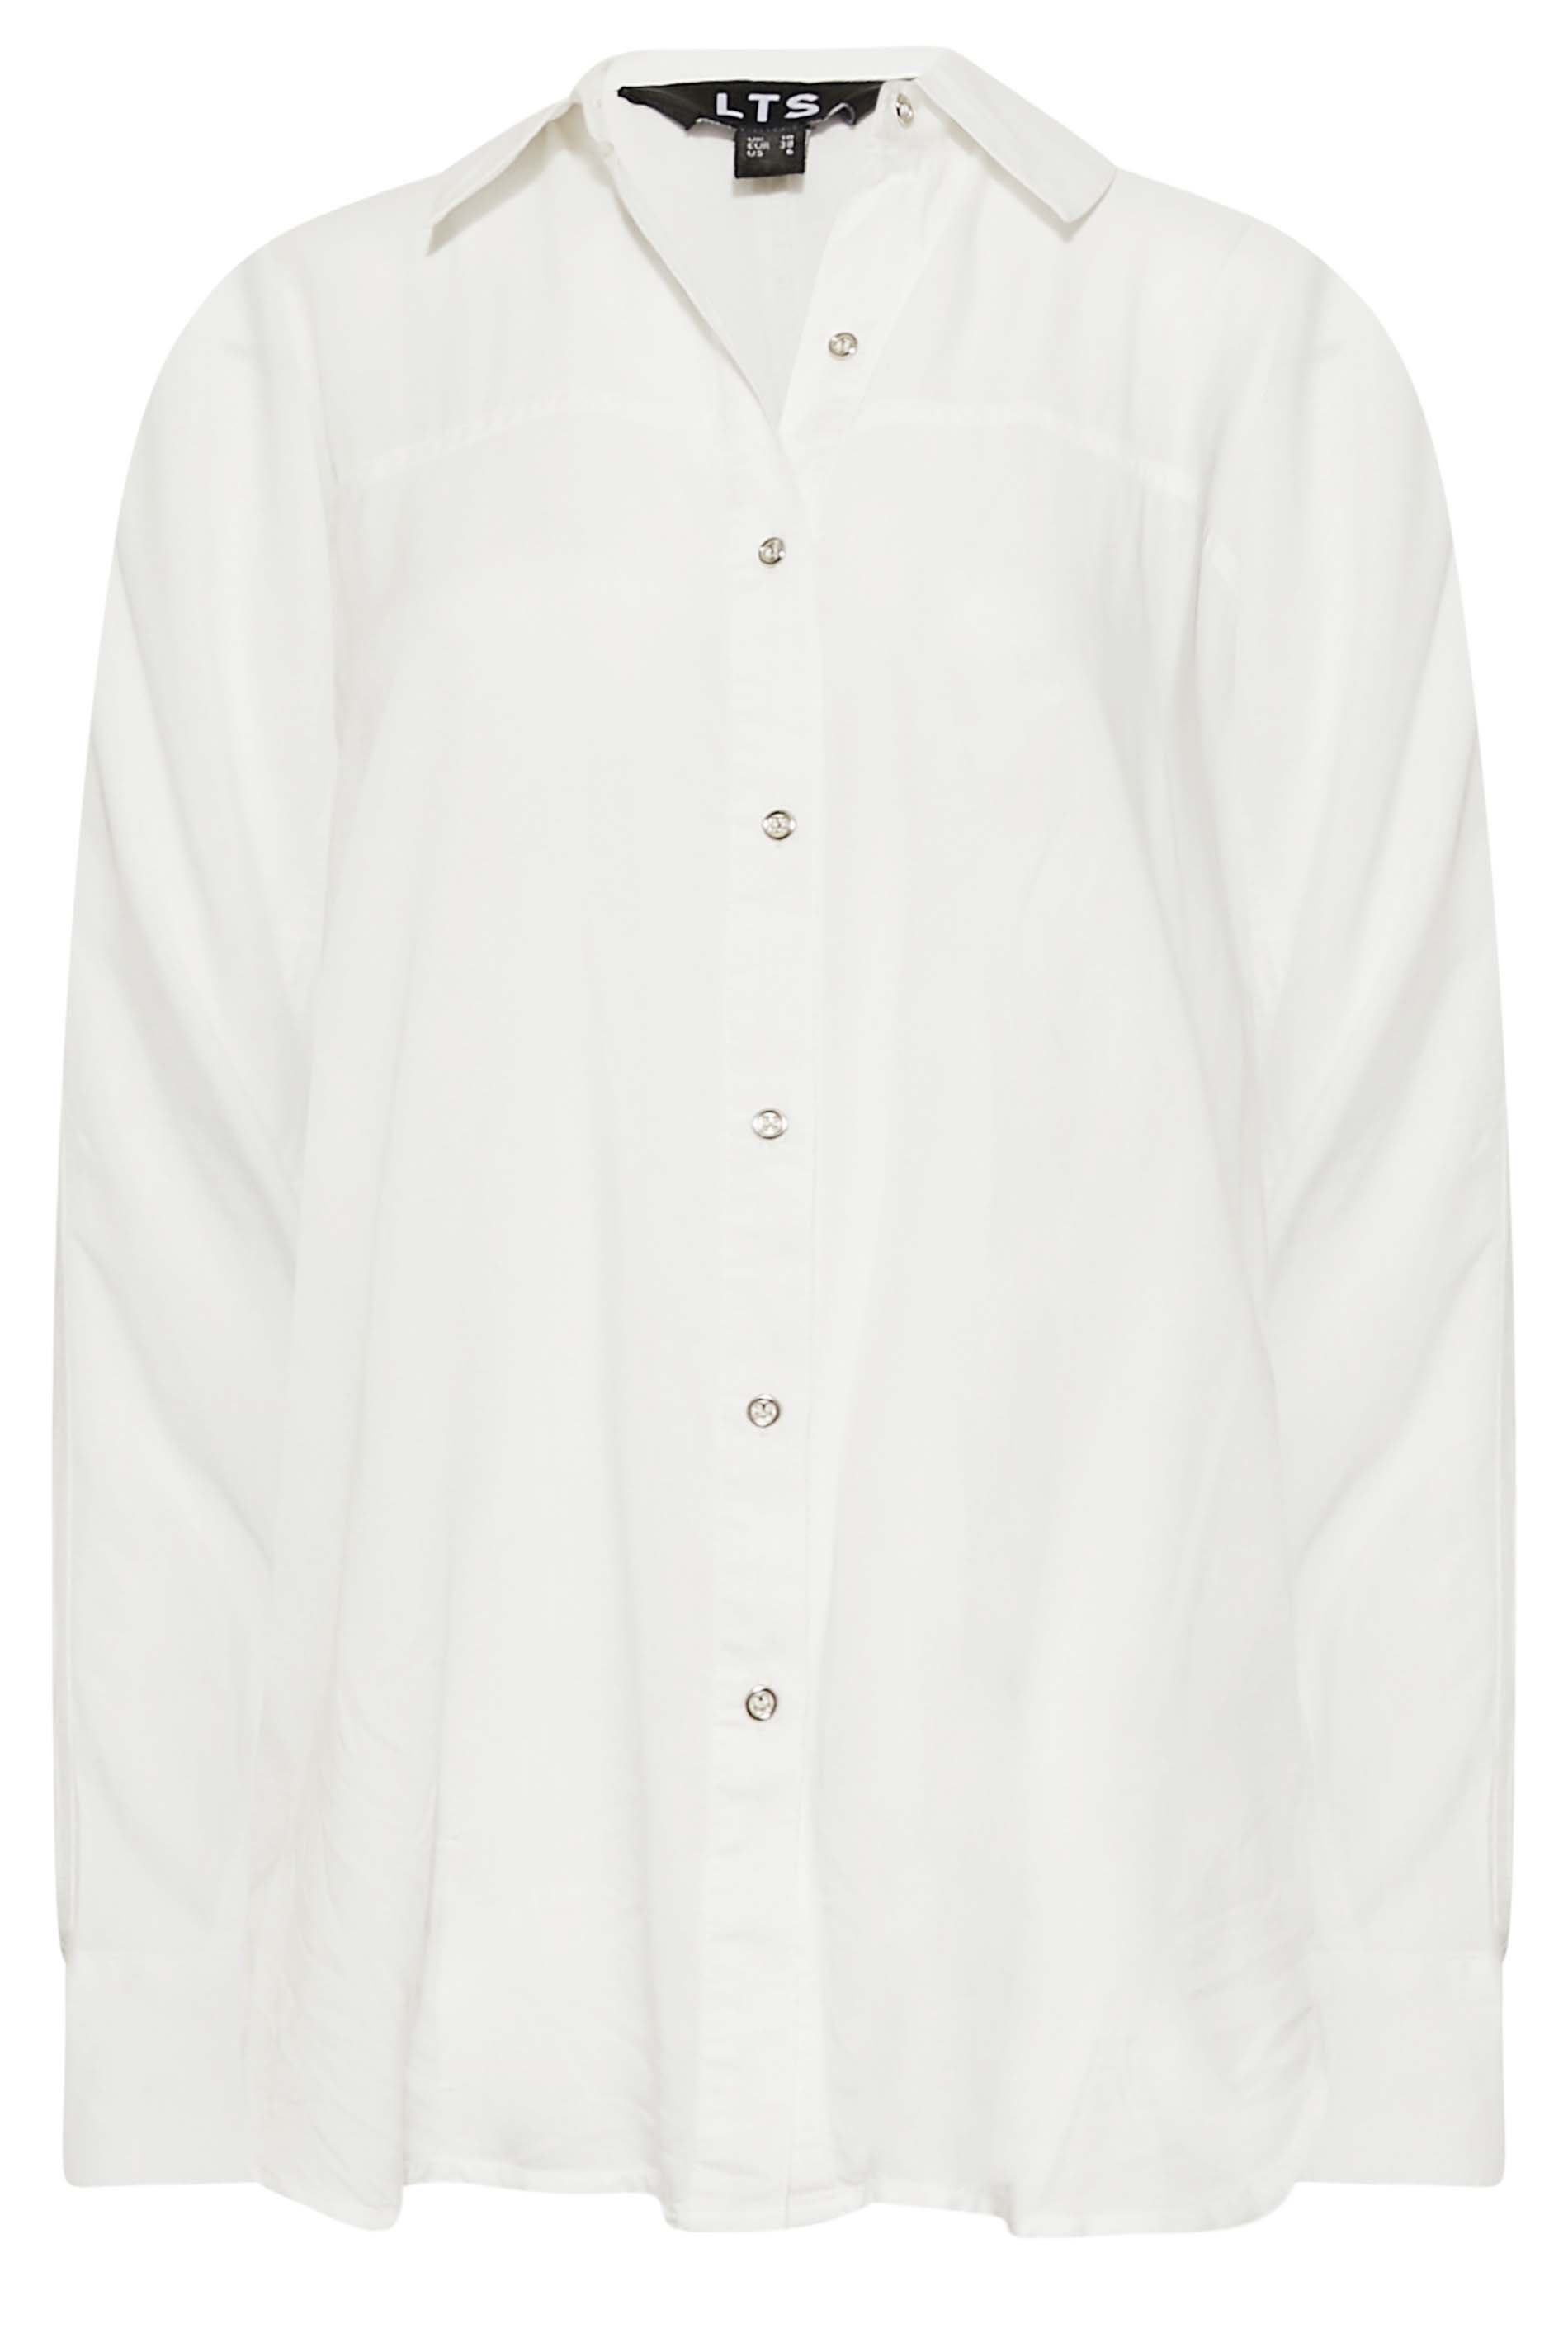 LTS Tall Women's White Long Sleeve Shirt | Long Tall Sally 2